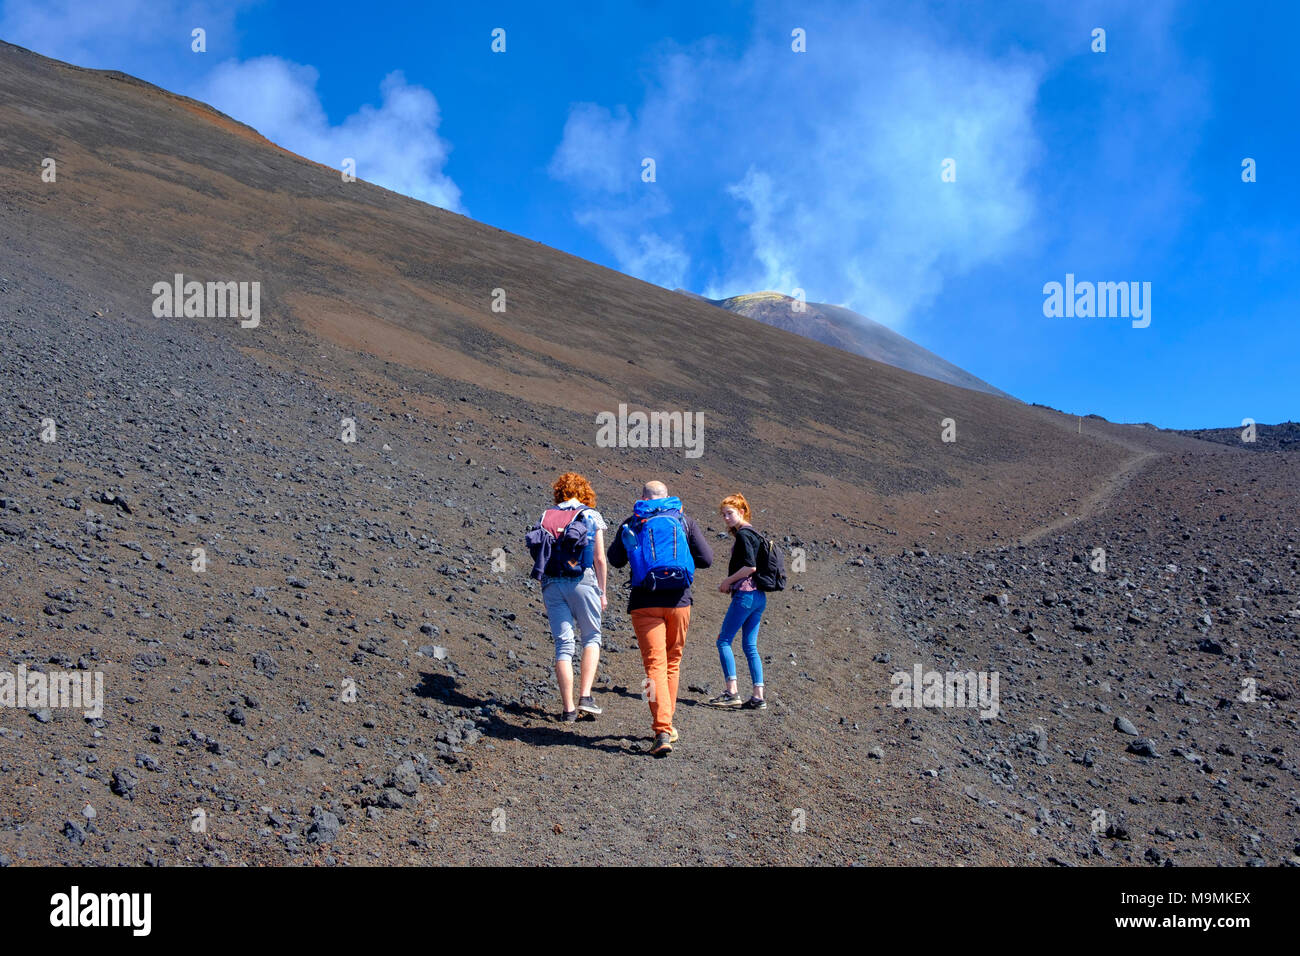 Gli escursionisti salendo attraverso il paesaggio vulcanico, Vulcano Etna, provincia di Catania, Silzilia, Italia Foto Stock